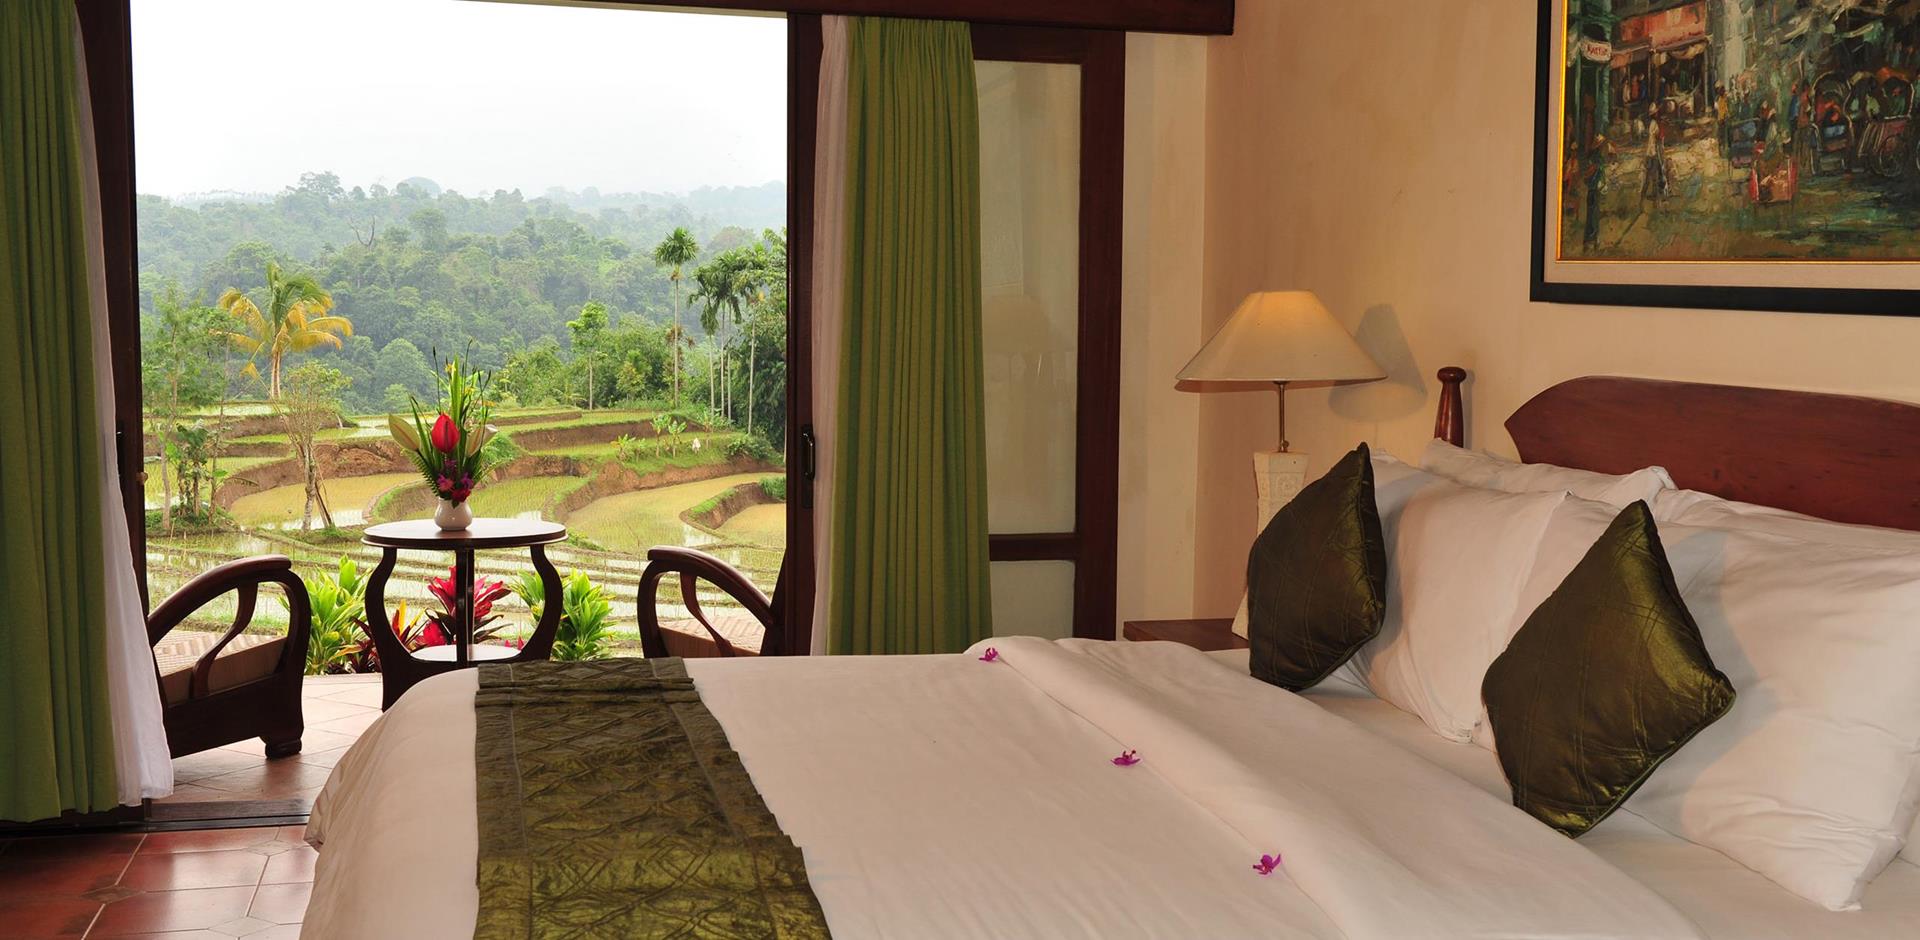 Bedroom, Ijen Resort and Villas, Indonesia